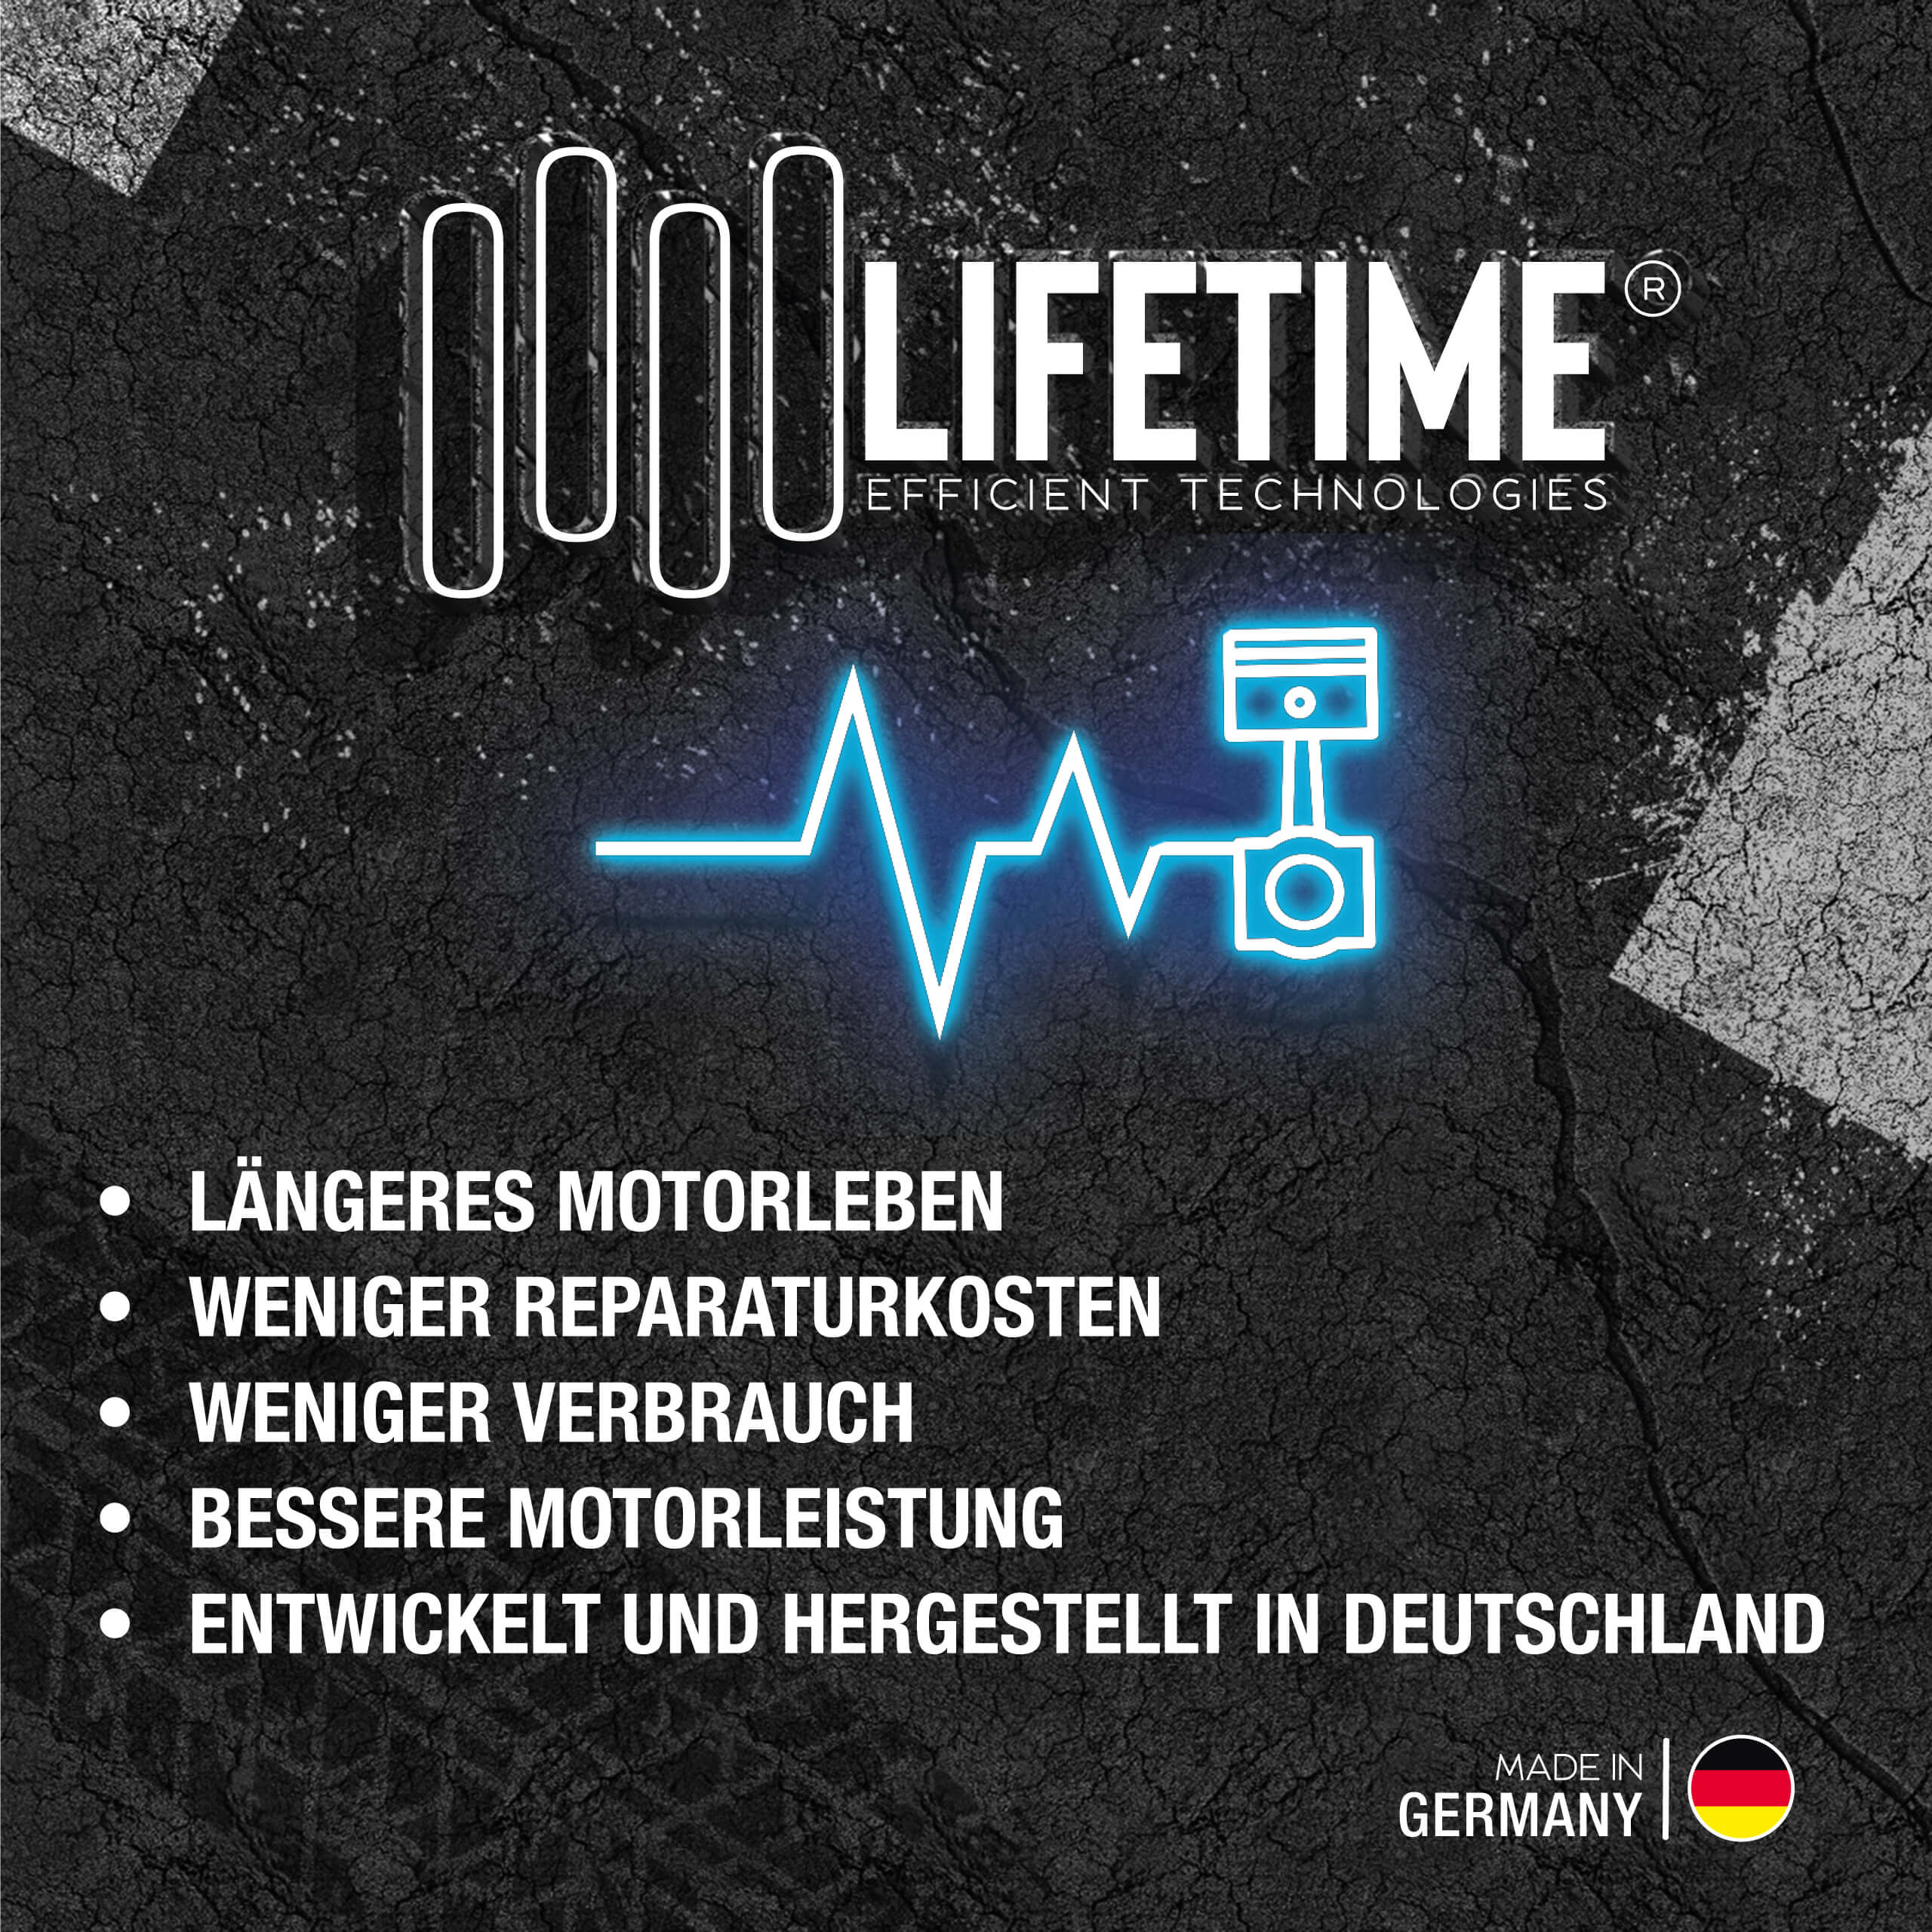 Lifetime Benzin-System Reinigungs-Kit